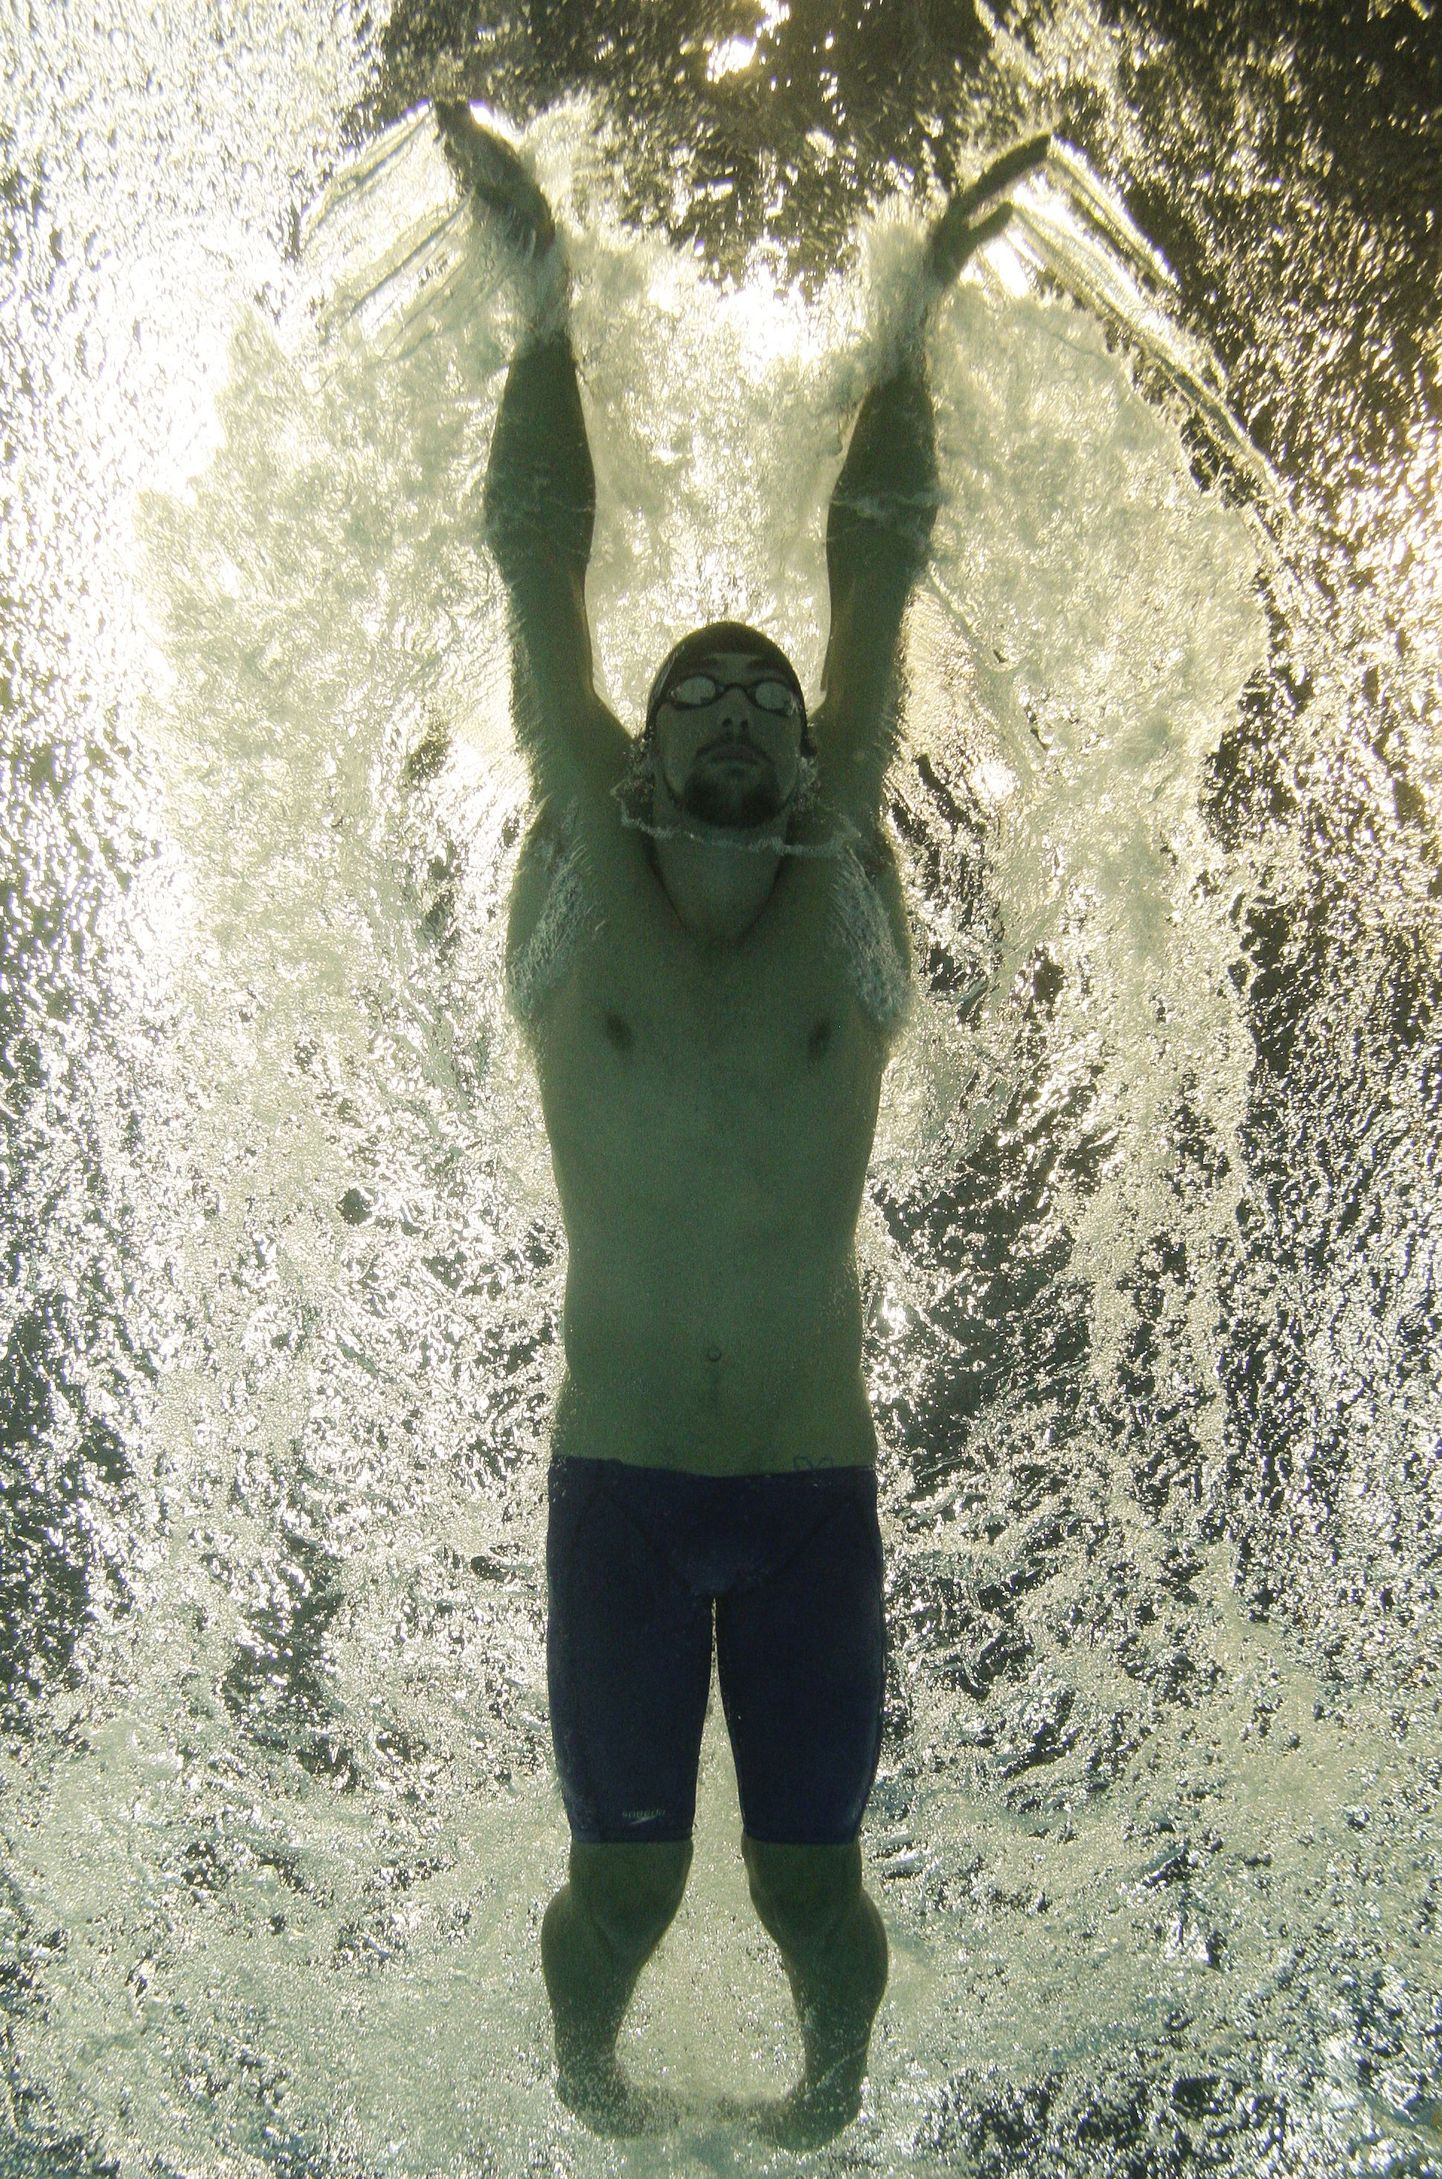 Michael Phelps loobus imetrikoost ja ujub nüüd ujumispükstes, mis on ka järgmisel aastal lubatud.